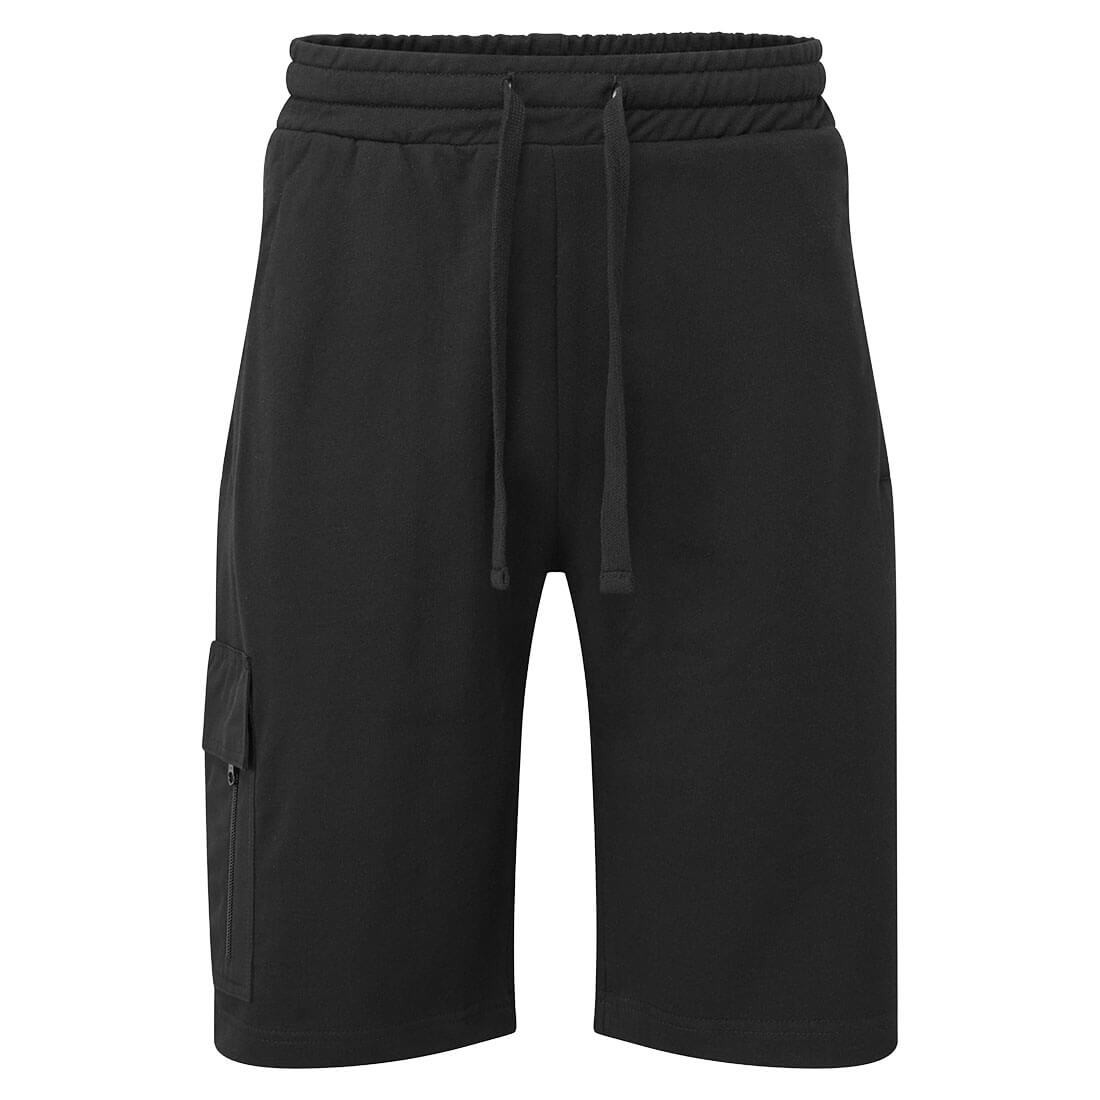 Pantalon KX3 Cargo - Les vêtements de protection